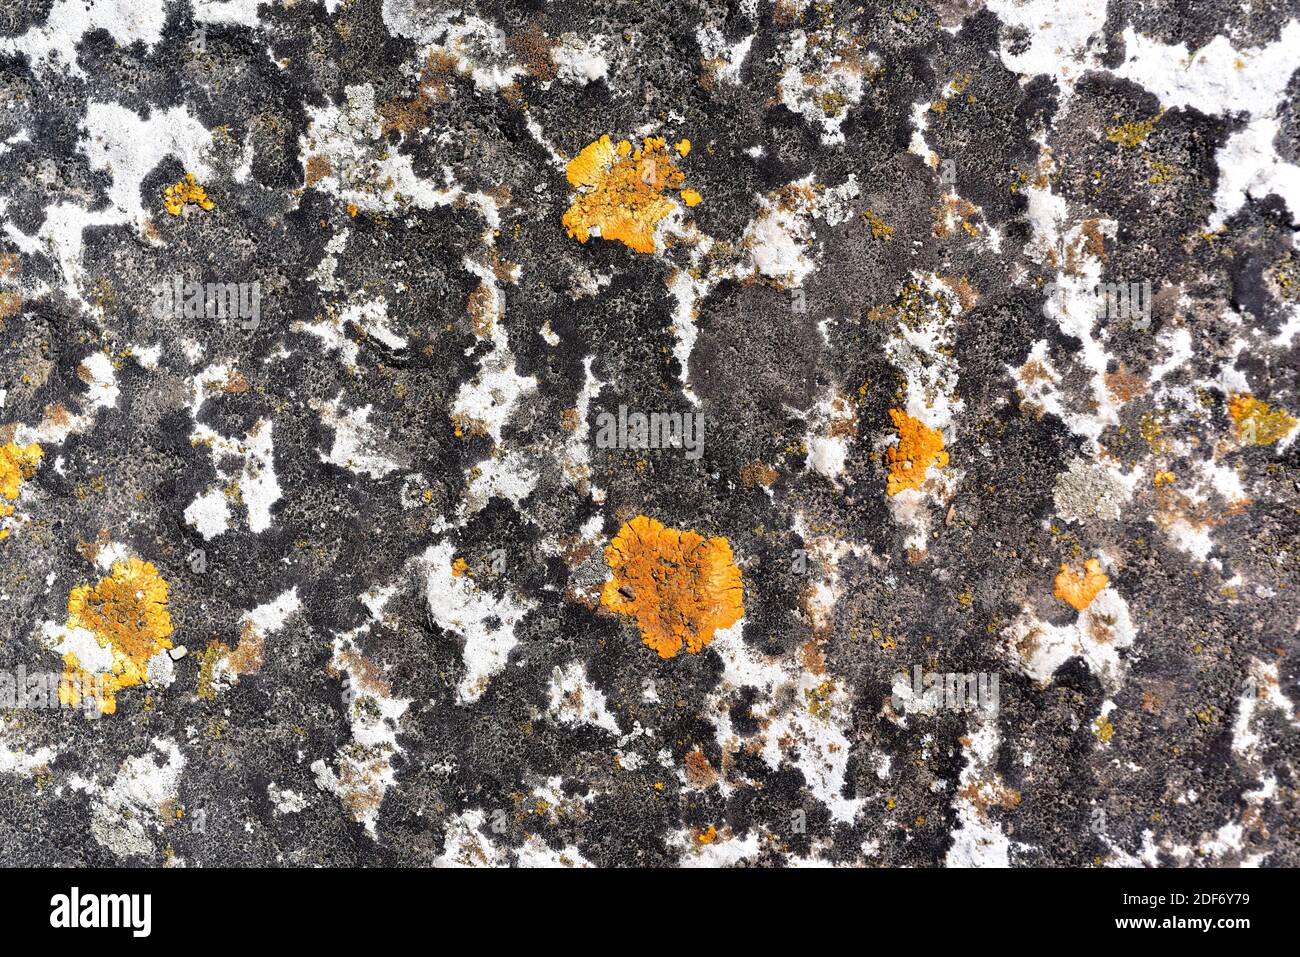 Crustose lichen community with Verrucaria nigrescens (black), Aspicilia calcarea (grey) and Xanthoria flavescens (orange) growing on a calcareous Stock Photo